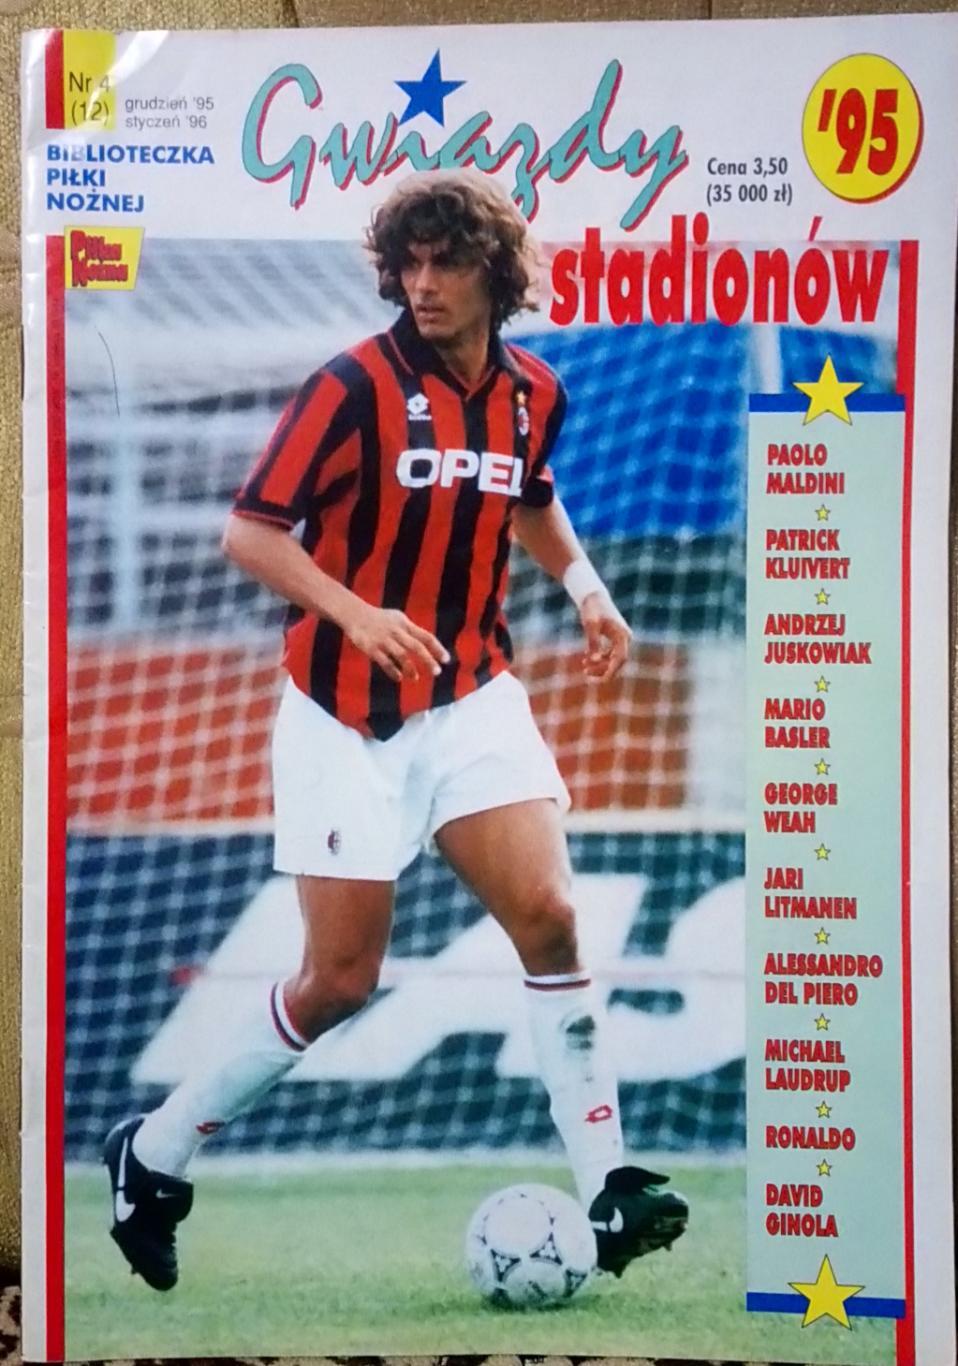 Футбол. Pilka Nozna. Gwiazdy Stadionow. 1995.Постери.